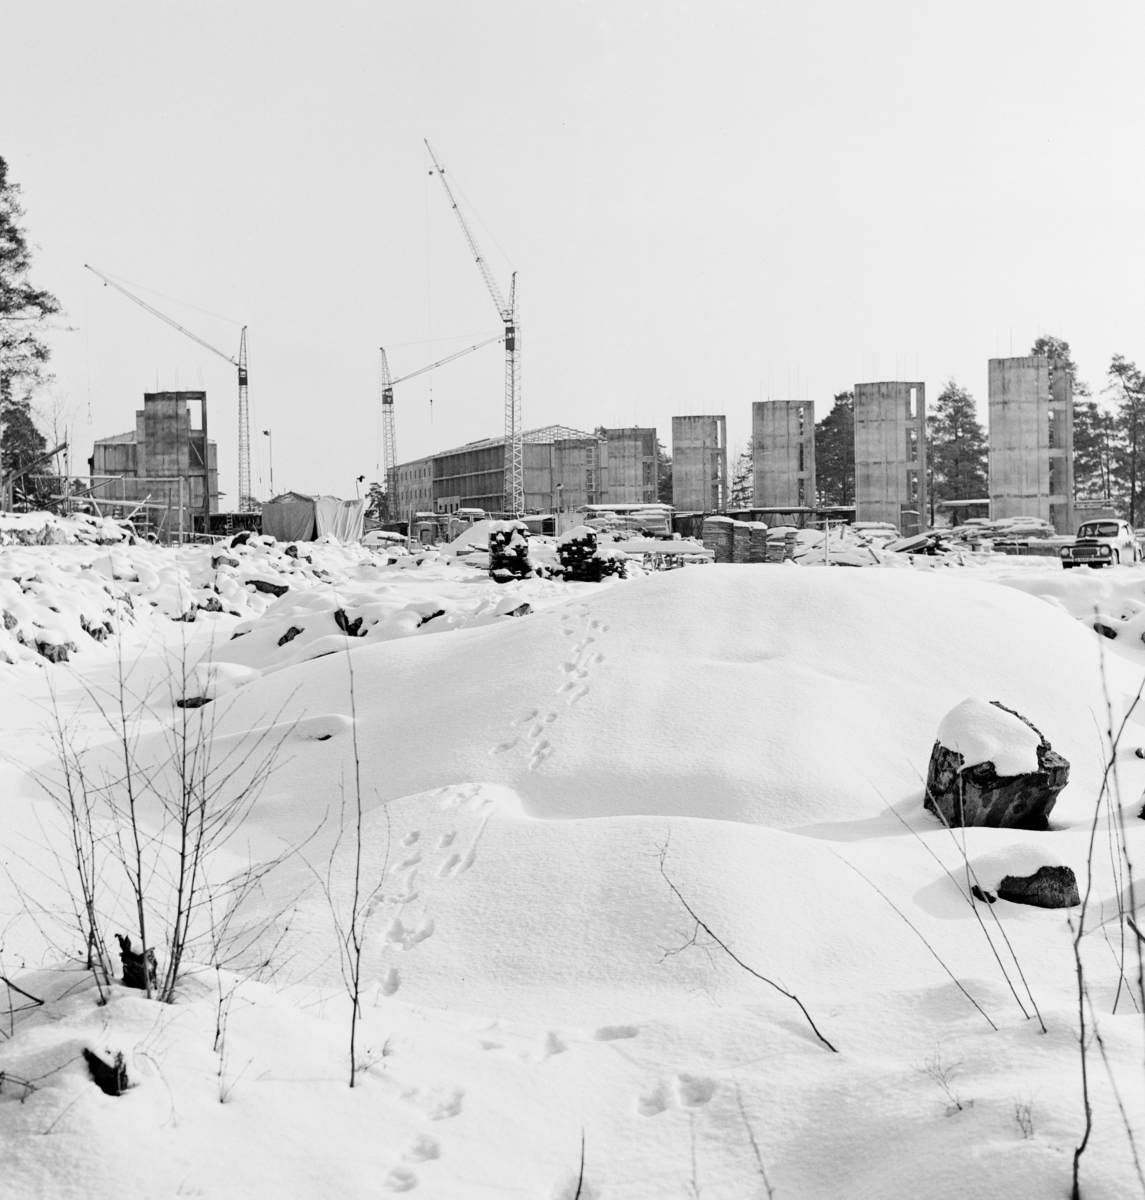 Byggarbetsplats
Exteriör, byggnader under uppförande i fonden. Öppet fält under snötacke i förgrunden.